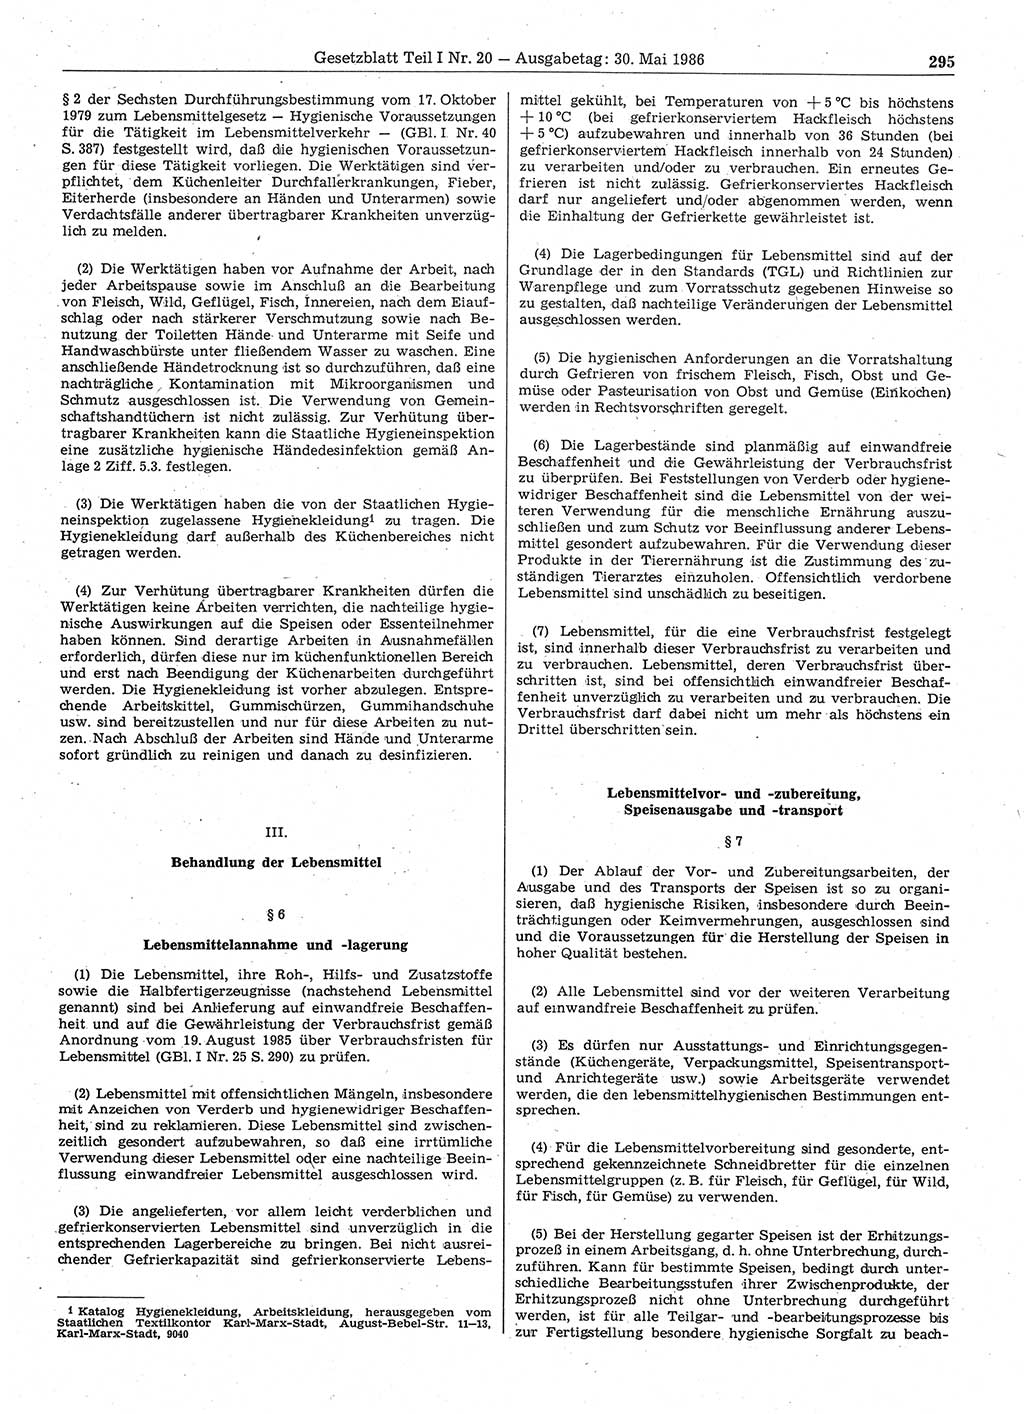 Gesetzblatt (GBl.) der Deutschen Demokratischen Republik (DDR) Teil Ⅰ 1986, Seite 295 (GBl. DDR Ⅰ 1986, S. 295)